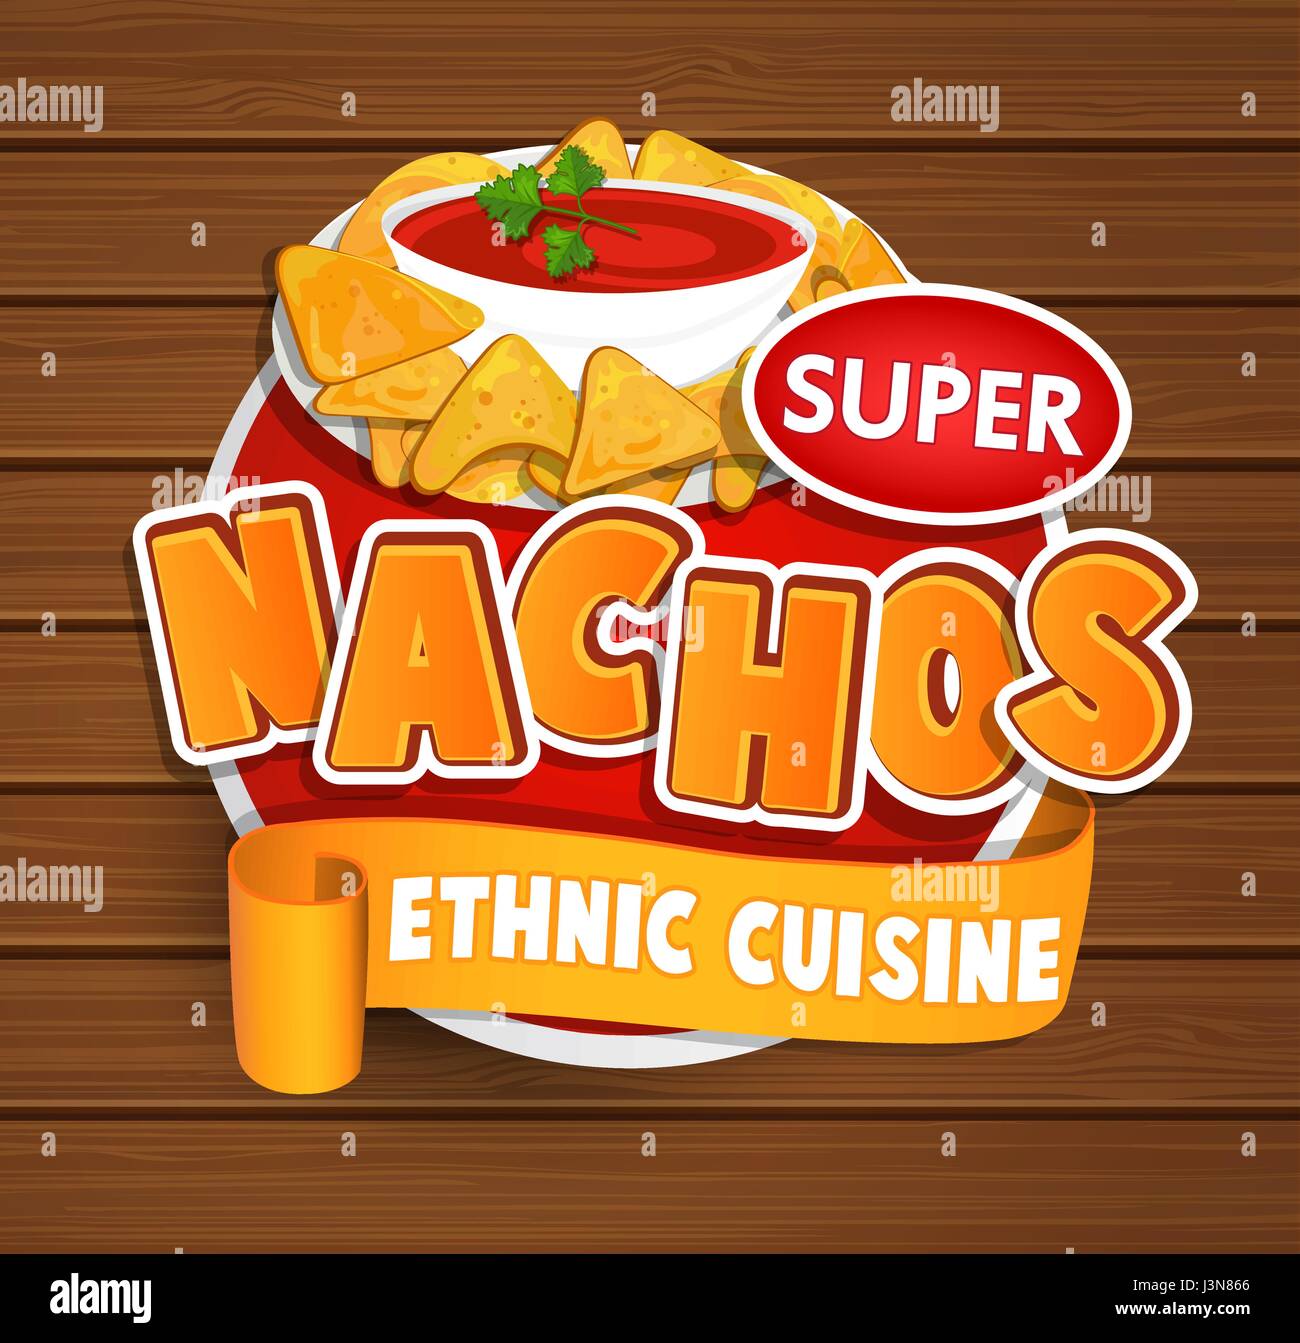 Nachos ethnische Küche Logo und Essen Beschriftung oder Aufkleber. Konzept der mexikanischen Küche, traditionelle Produktdesign für Geschäfte, Märkte. Vektor-Illustration. Stock Vektor